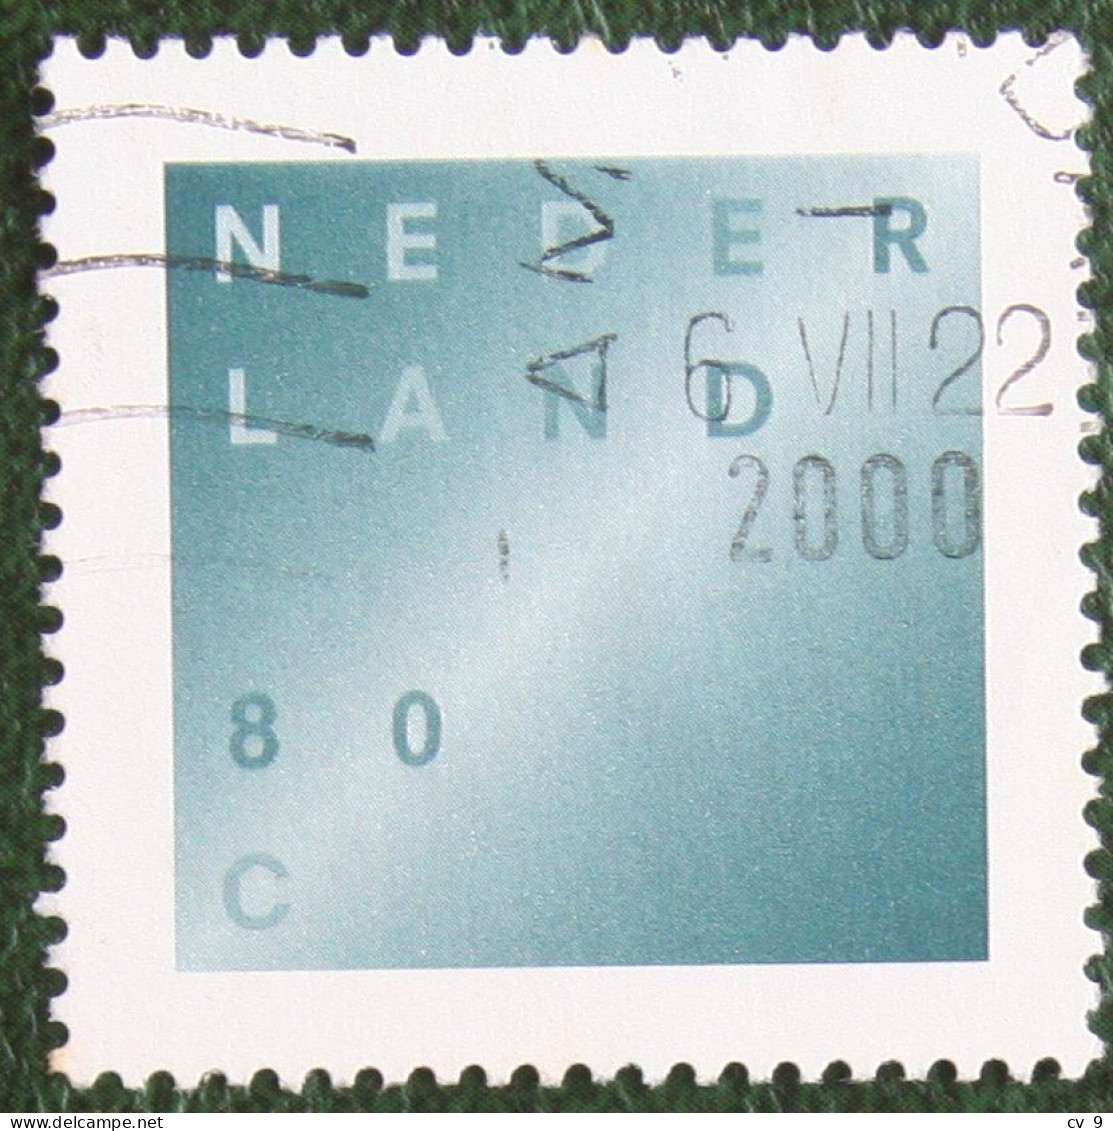 Rouwzegel NVPH 1746 (Mi 1641); 1998 1998 Gestempeld / USED NEDERLAND / NIEDERLANDE - Oblitérés